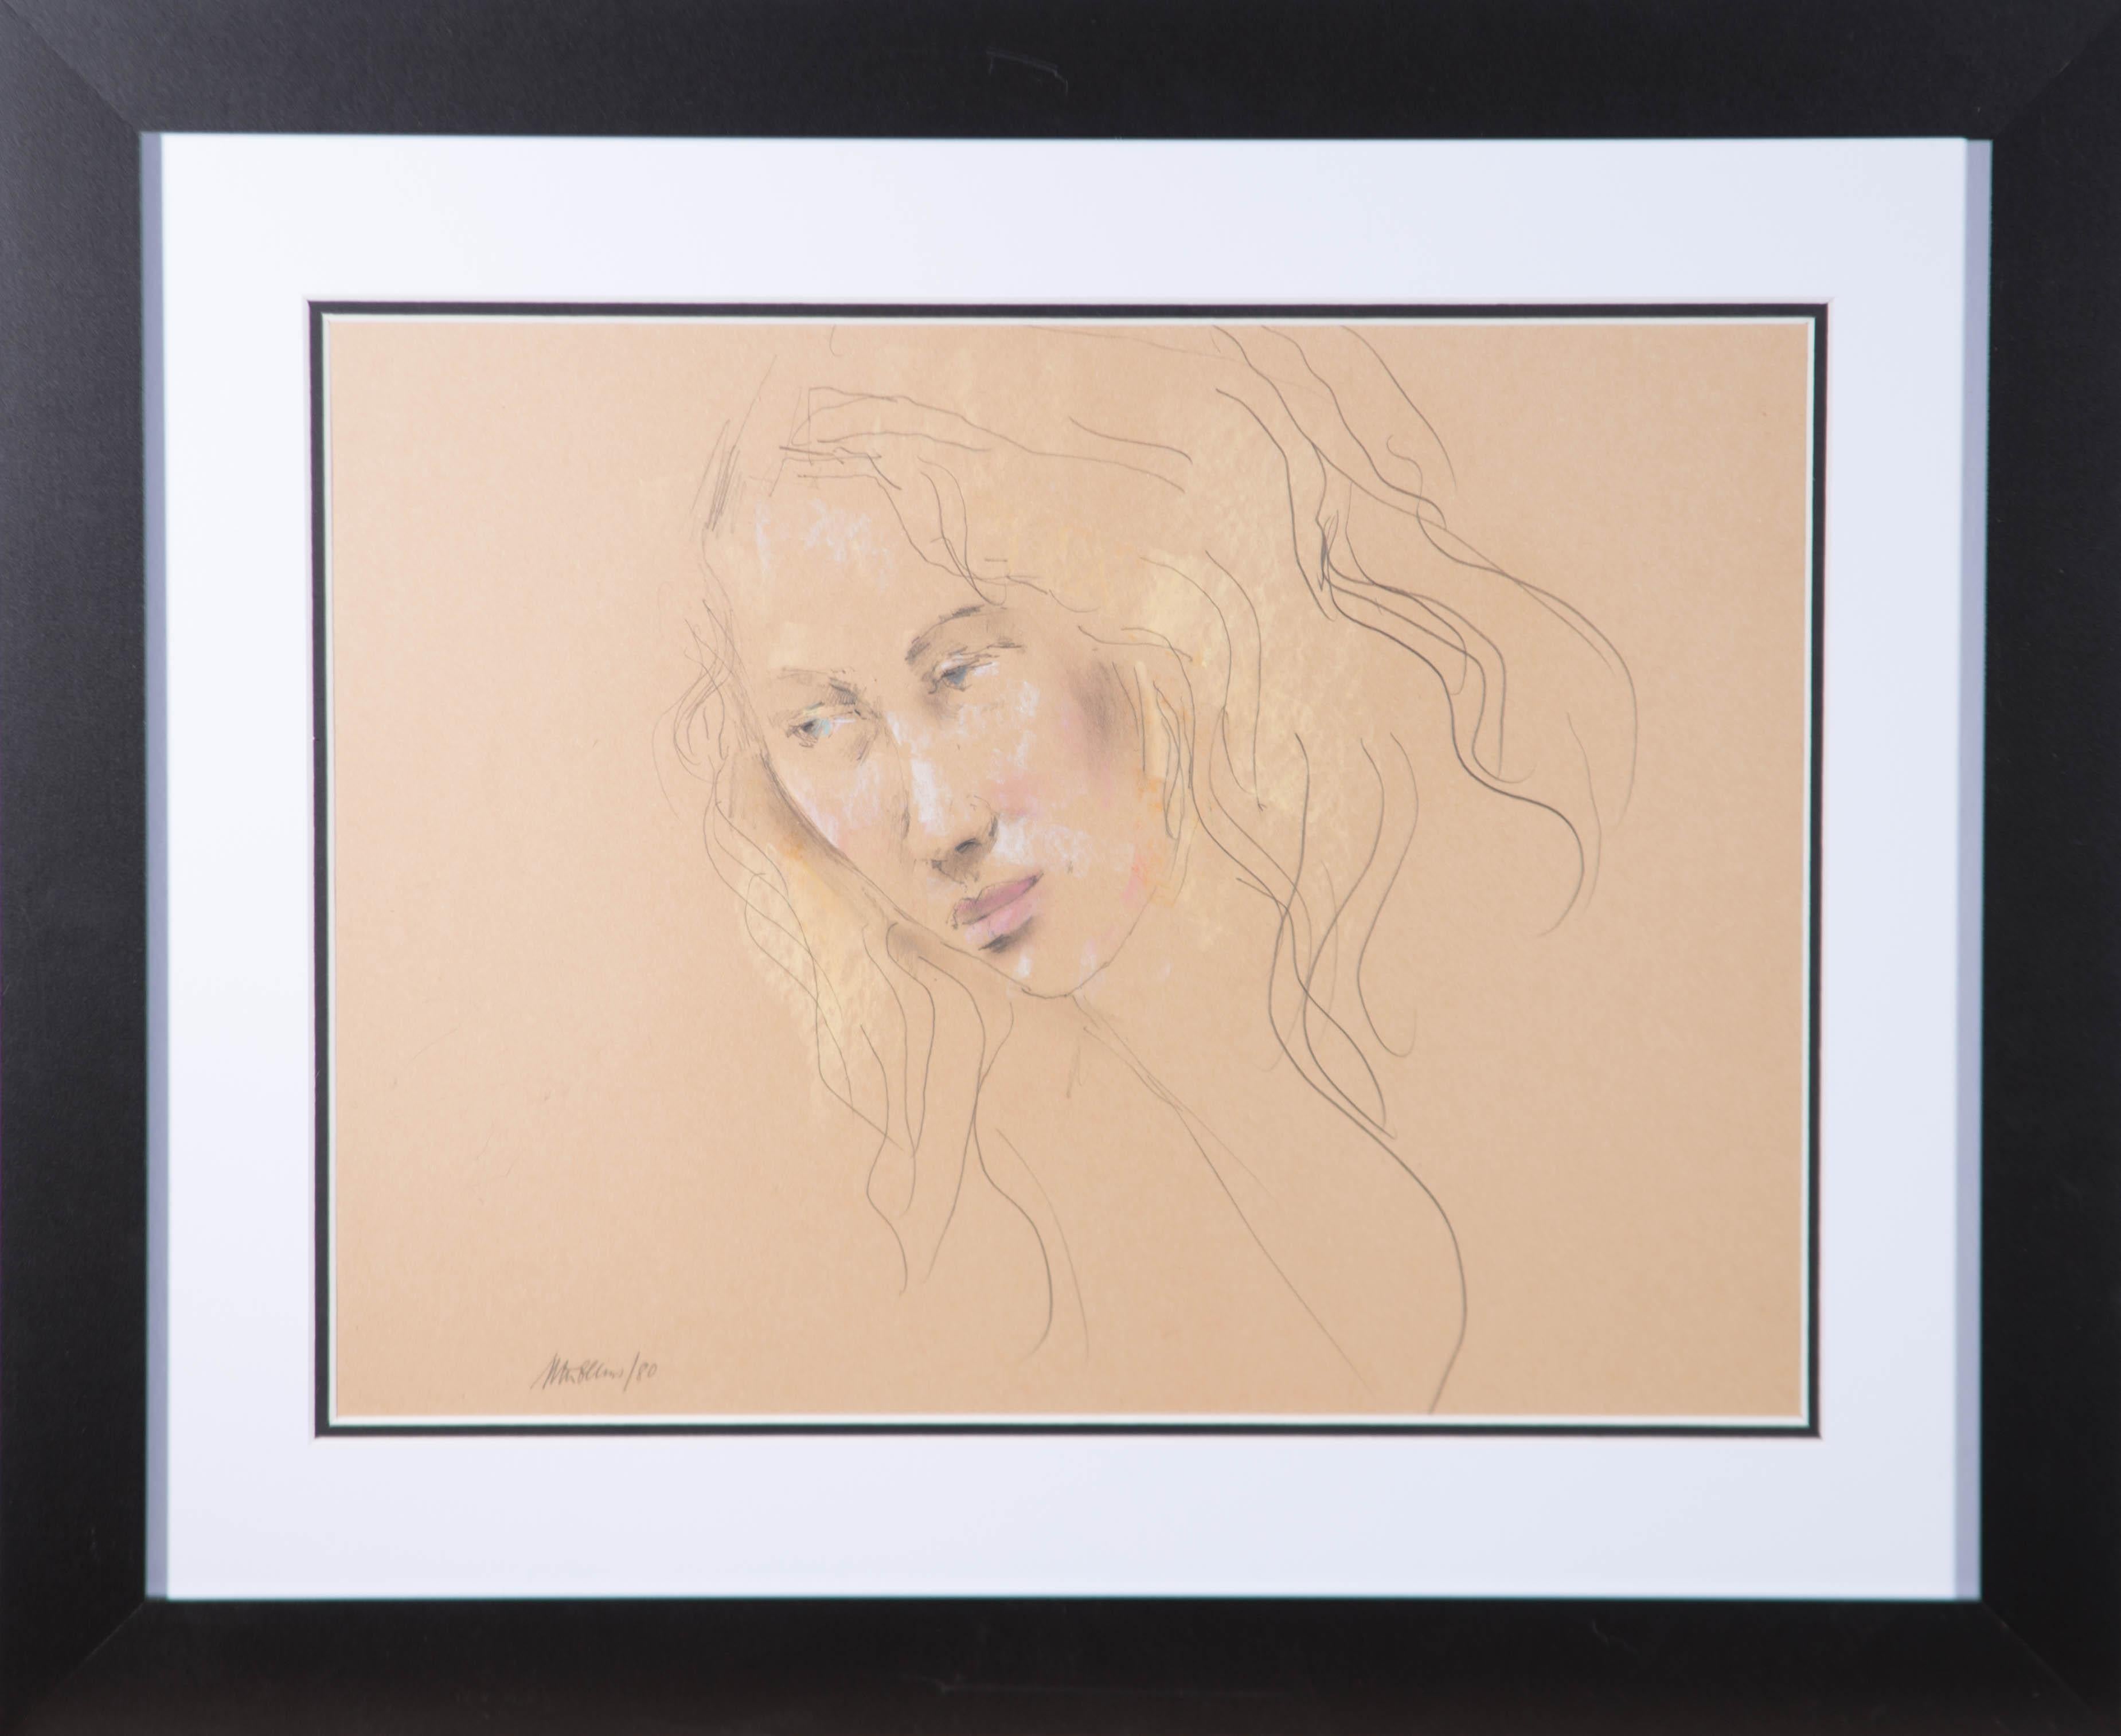 Ein wunderschönes Porträt einer jungen Frau von dem unter Denkmalschutz stehenden britischen Künstler Peter Collins. Mit pastellfarbenen Details. Sehr gut in einem zeitgenössischen schwarzen Rahmen mit doppeltem Passepartout präsentiert.